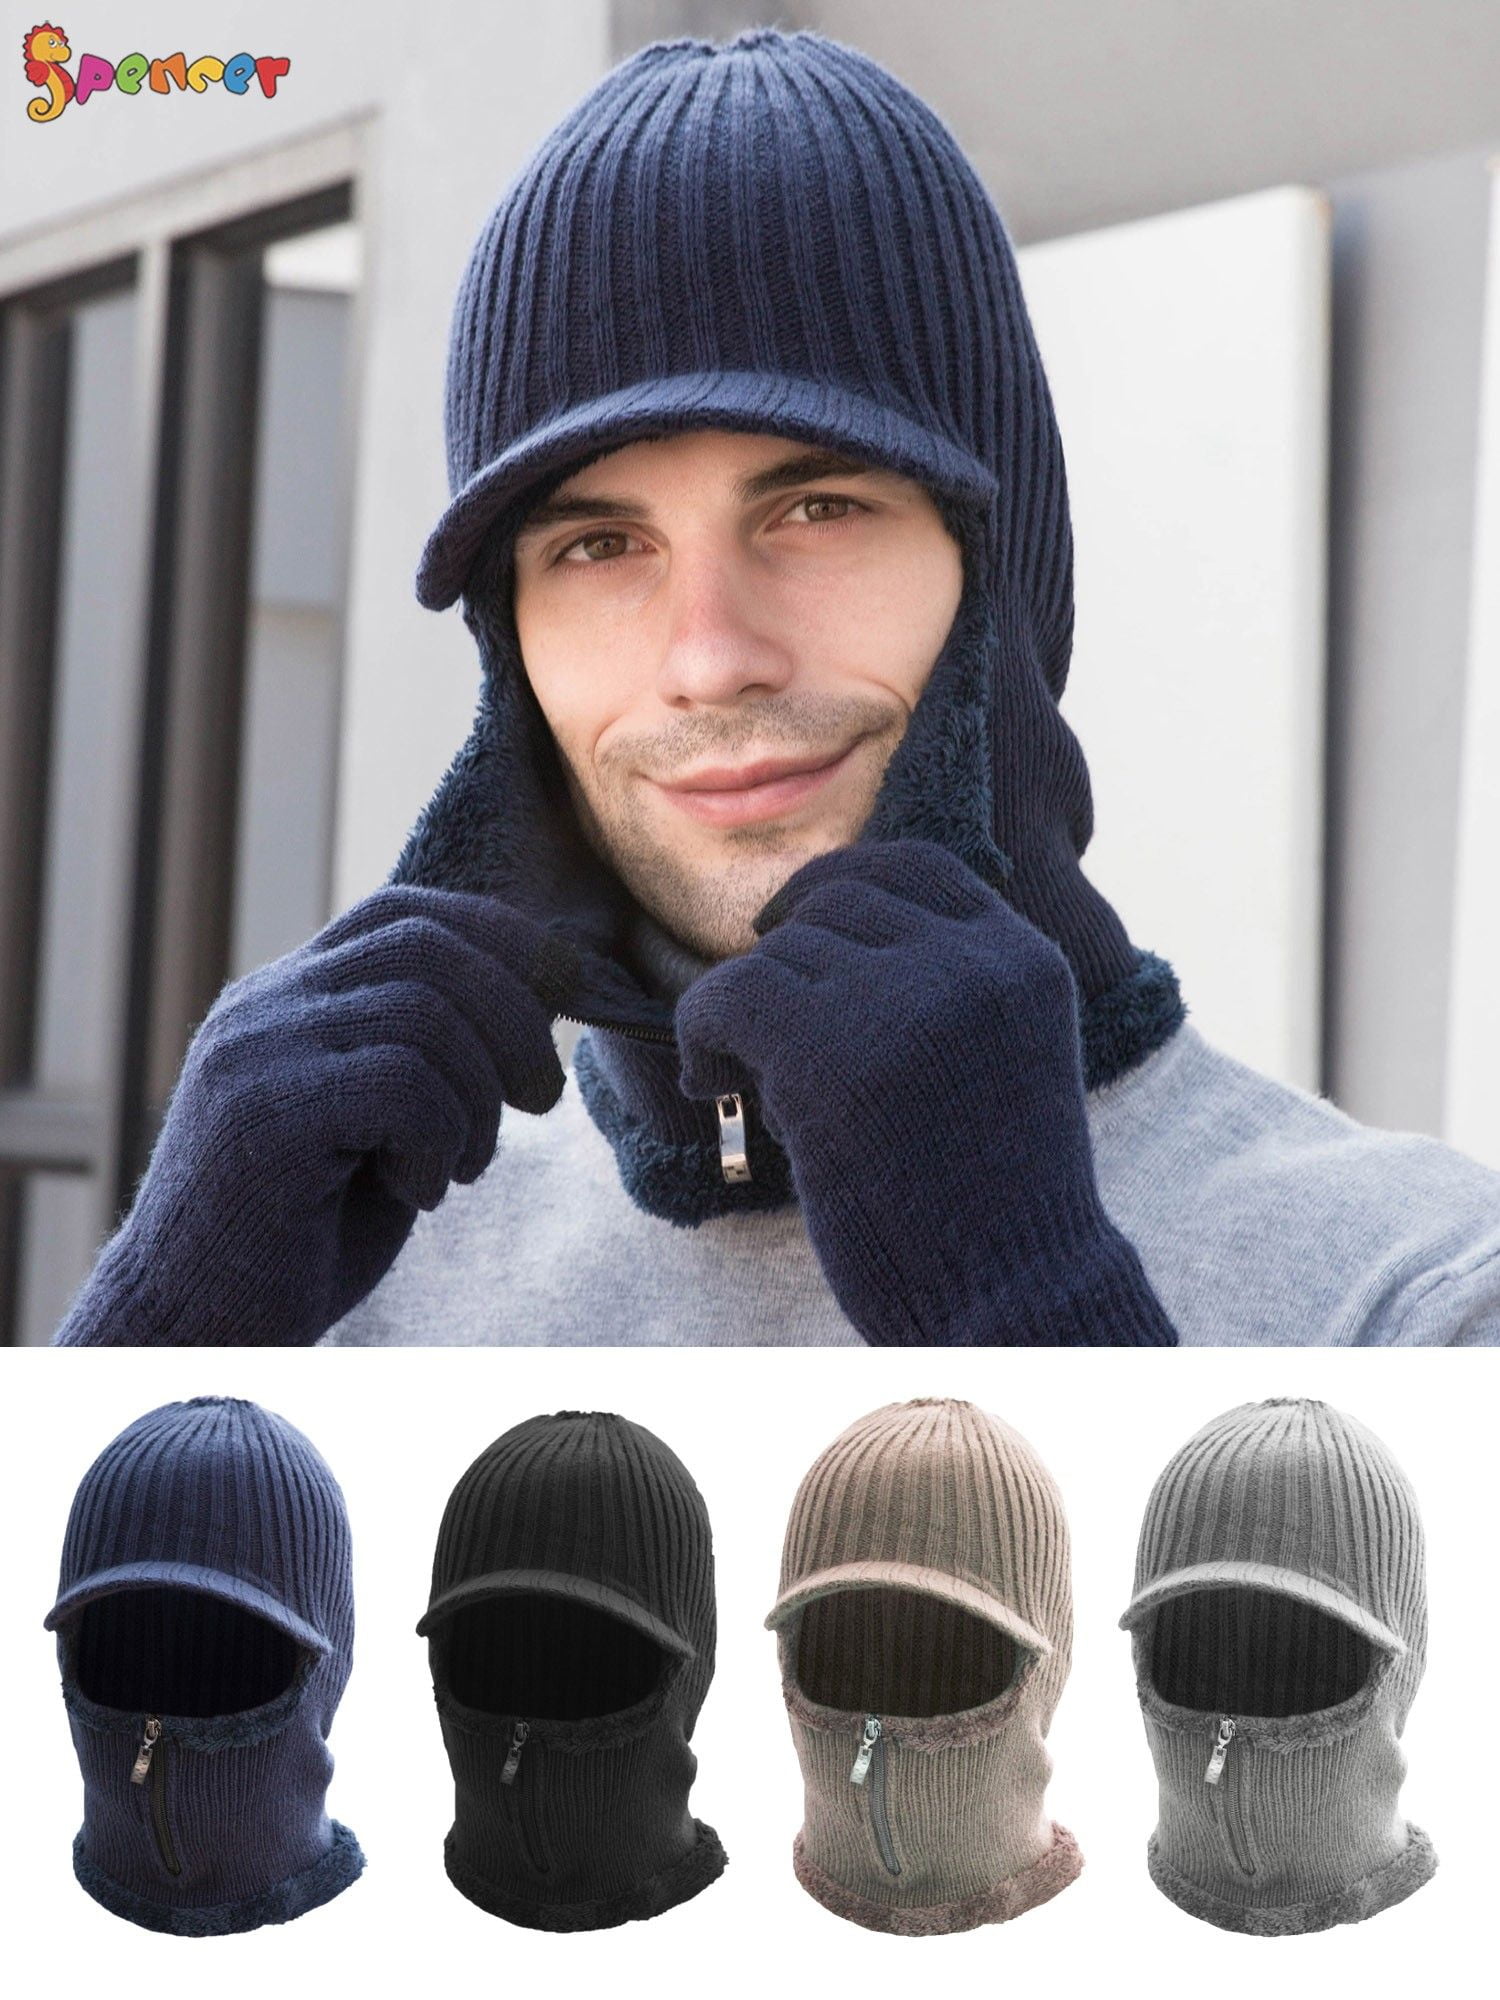 Winter Women's Knitted Hats And Neck Warmers Casual Wool Headwear Bonnet Beanies 